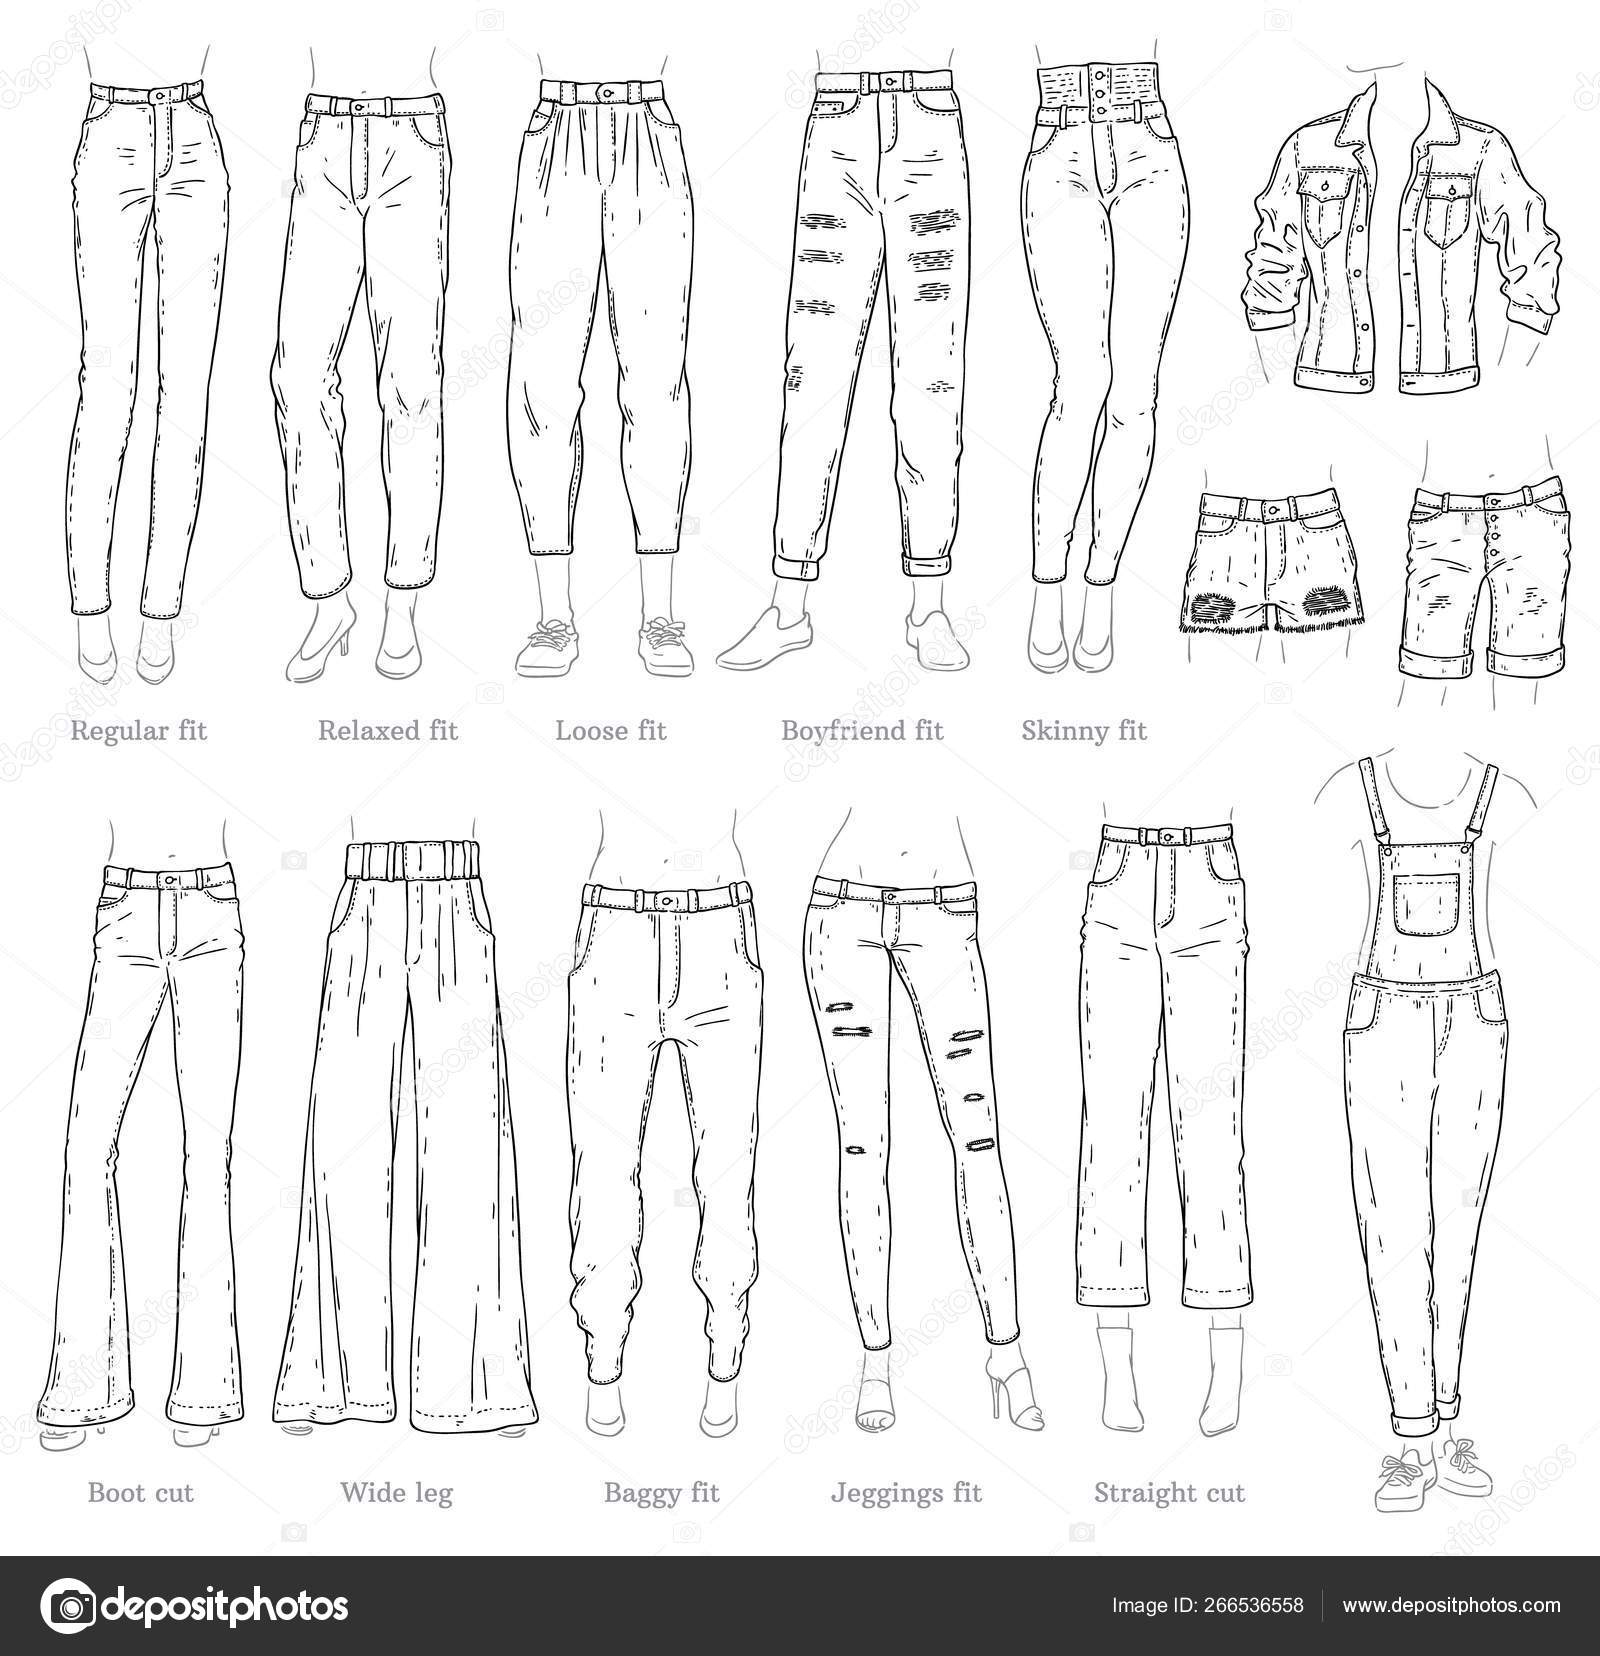 https://st4.depositphotos.com/1832477/26653/v/1600/depositphotos_266536558-stock-illustration-vector-leggings-fit-style-jeans.jpg